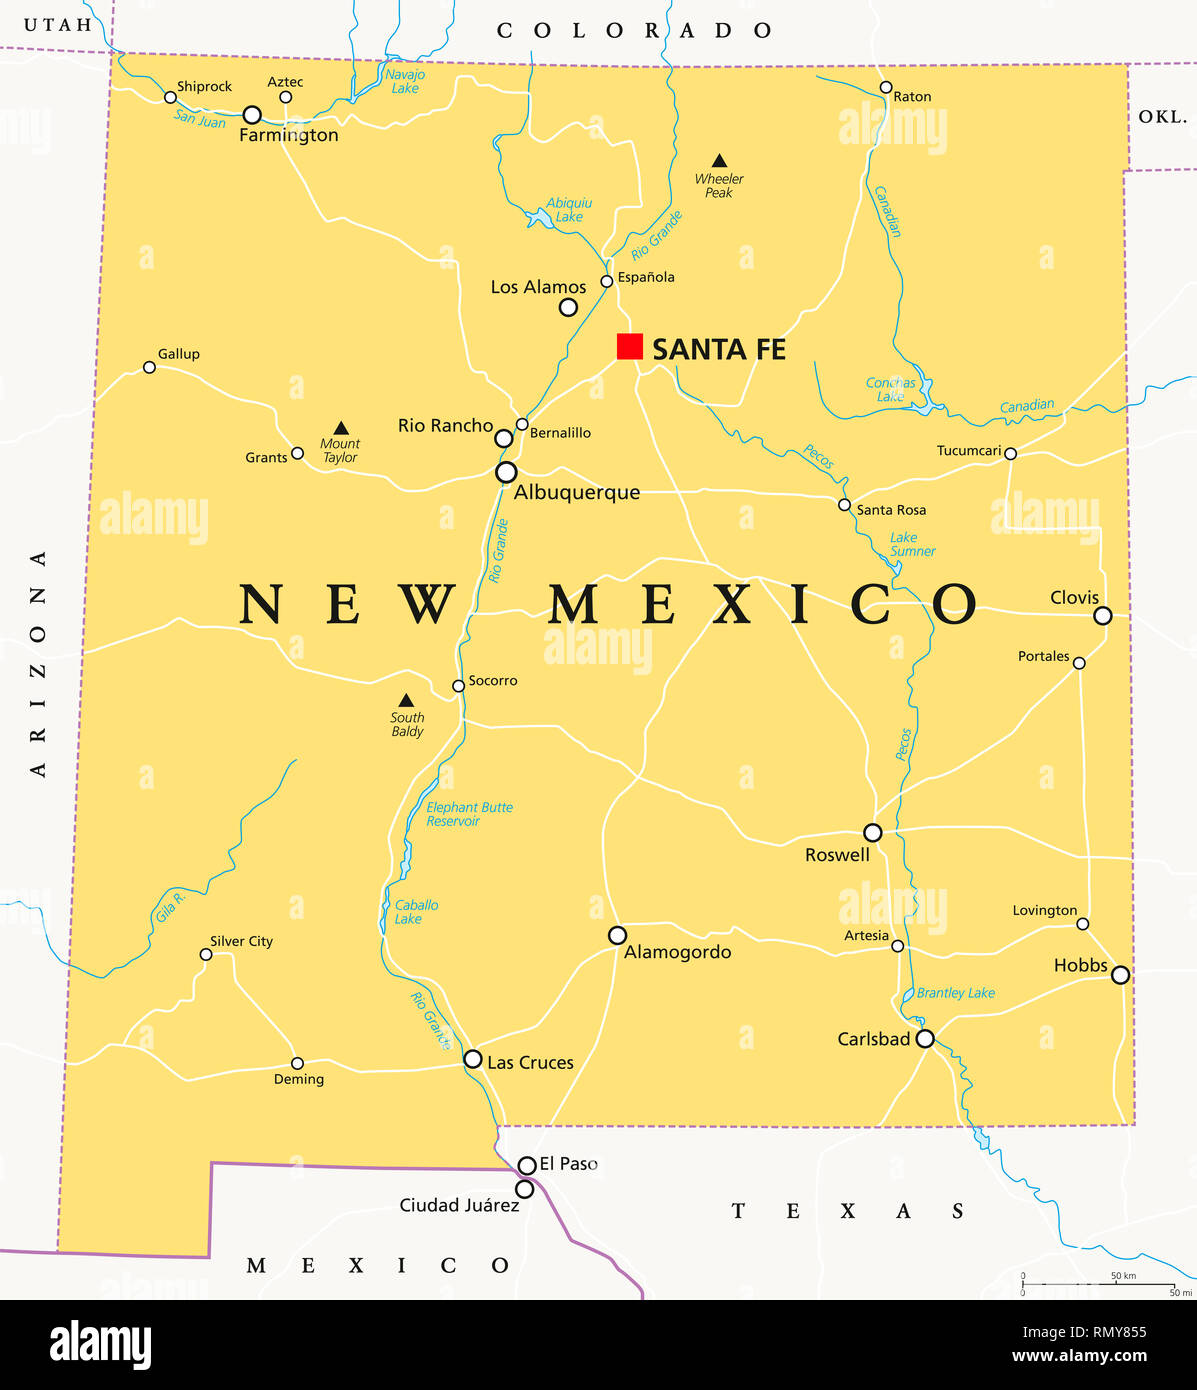 Nuovo Messico, mappa politico, con capitale Santa Fe, bordi importanti città, fiumi e laghi. Stato nella regione sud-ovest degli Stati Uniti. Foto Stock